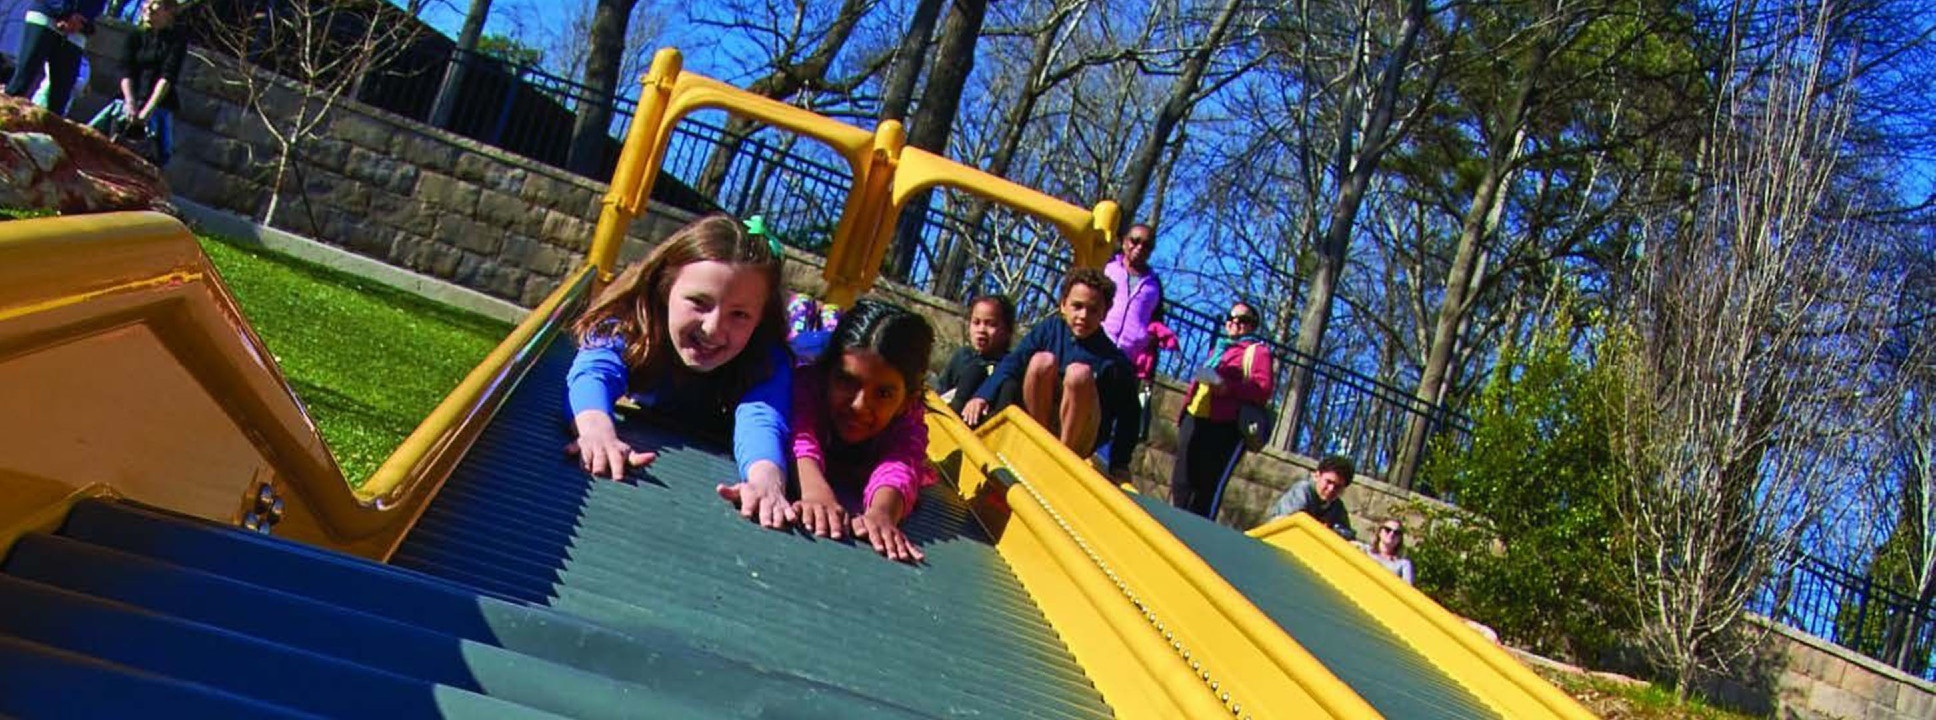 Kids sliding down a slide at Chastain Park